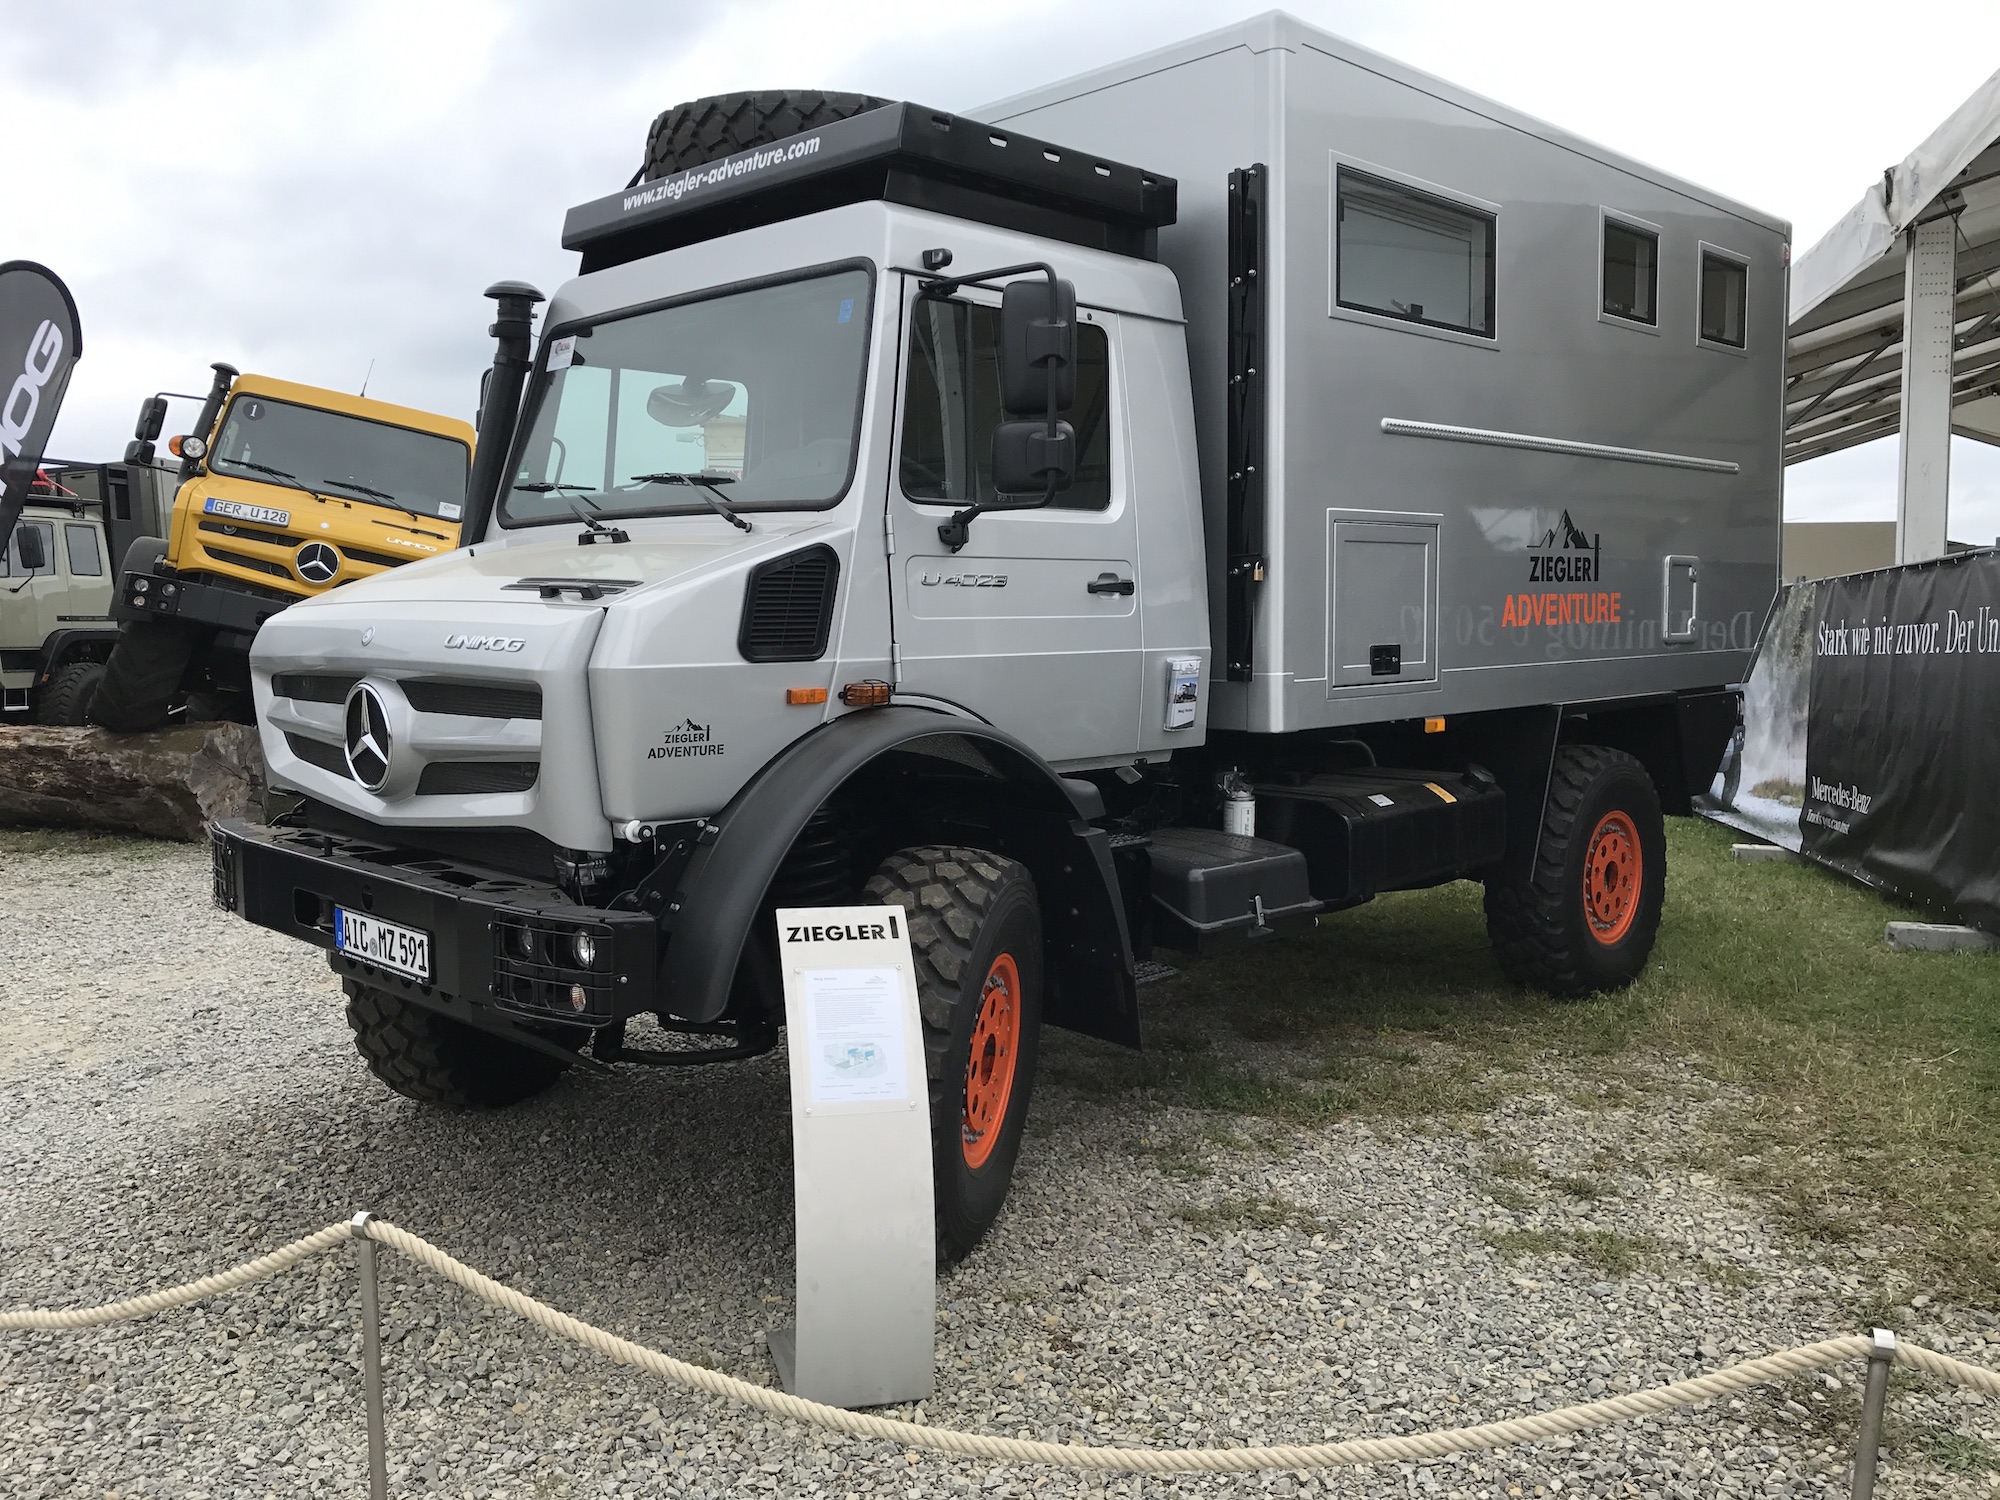 JP's type of expedition truck, Mercedes-Benz Unimog